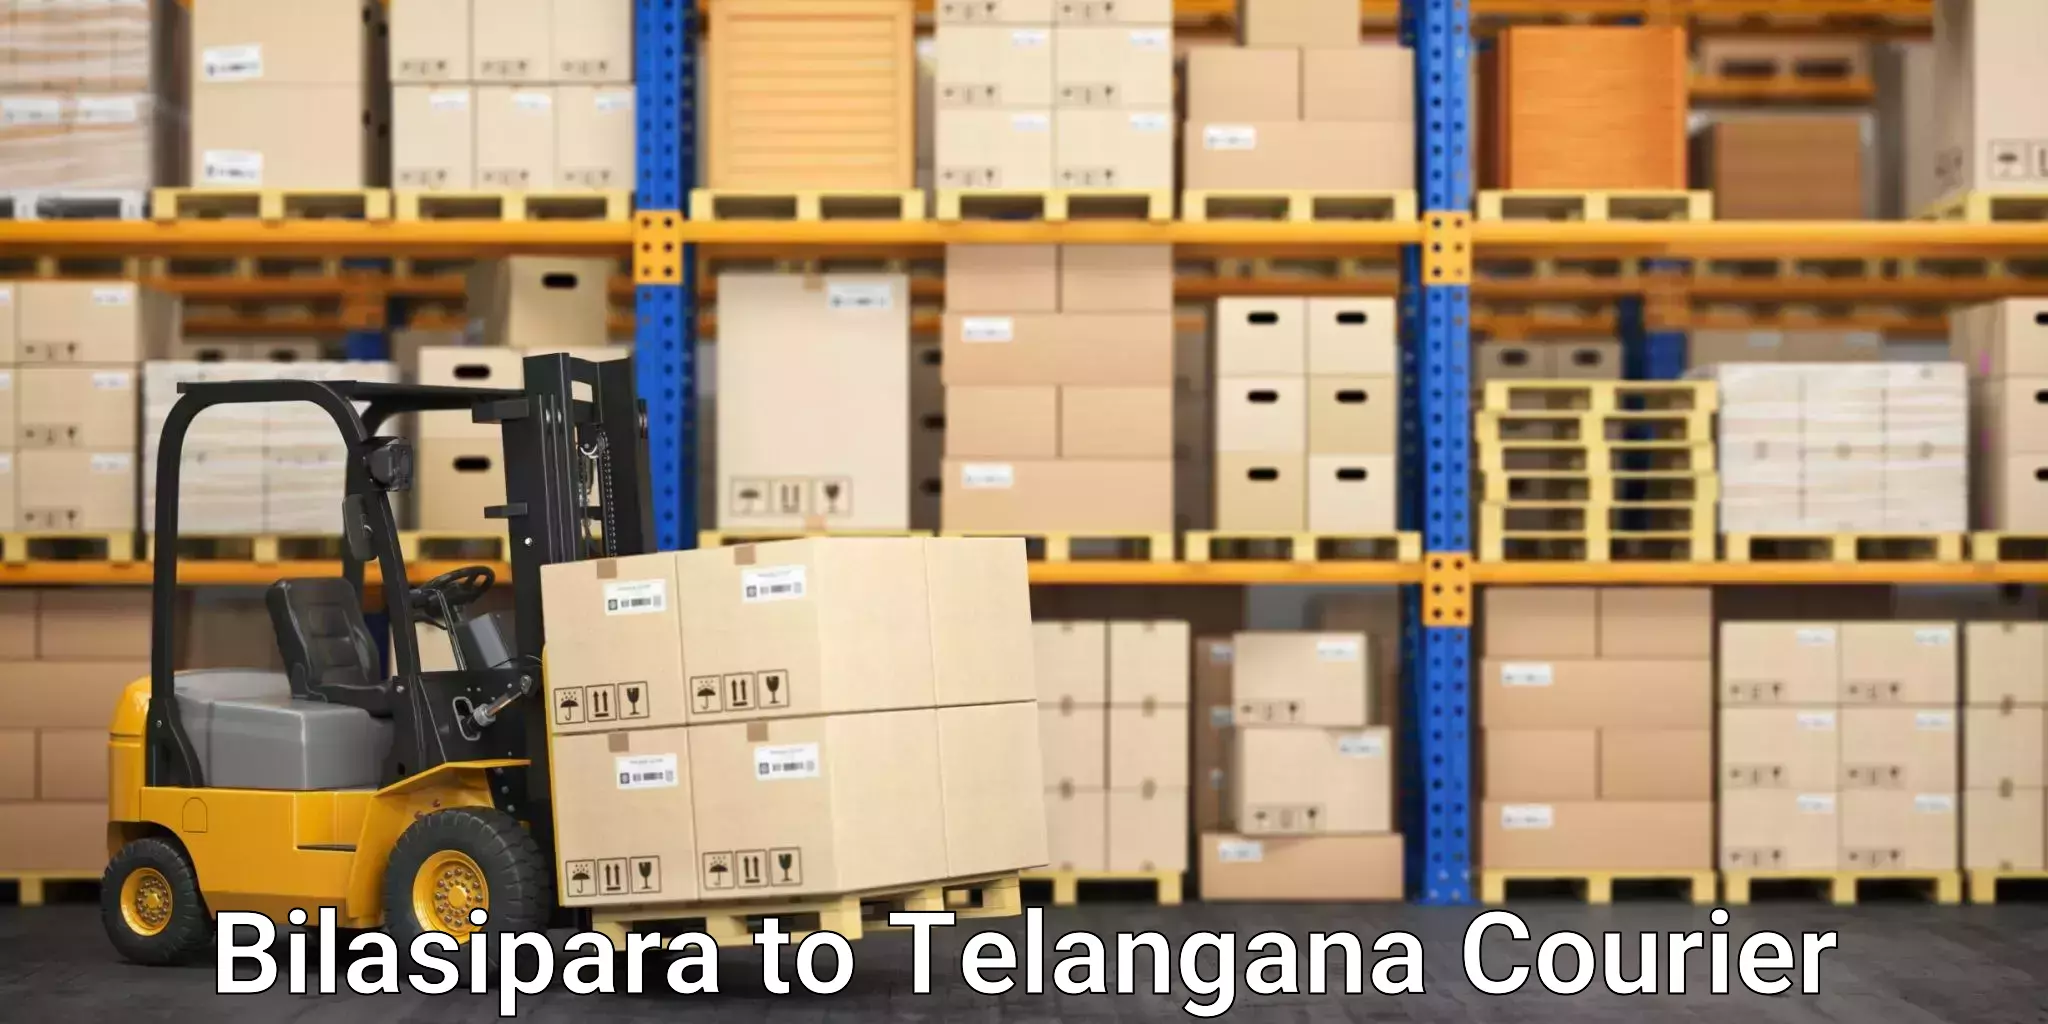 Express mail solutions Bilasipara to Telangana